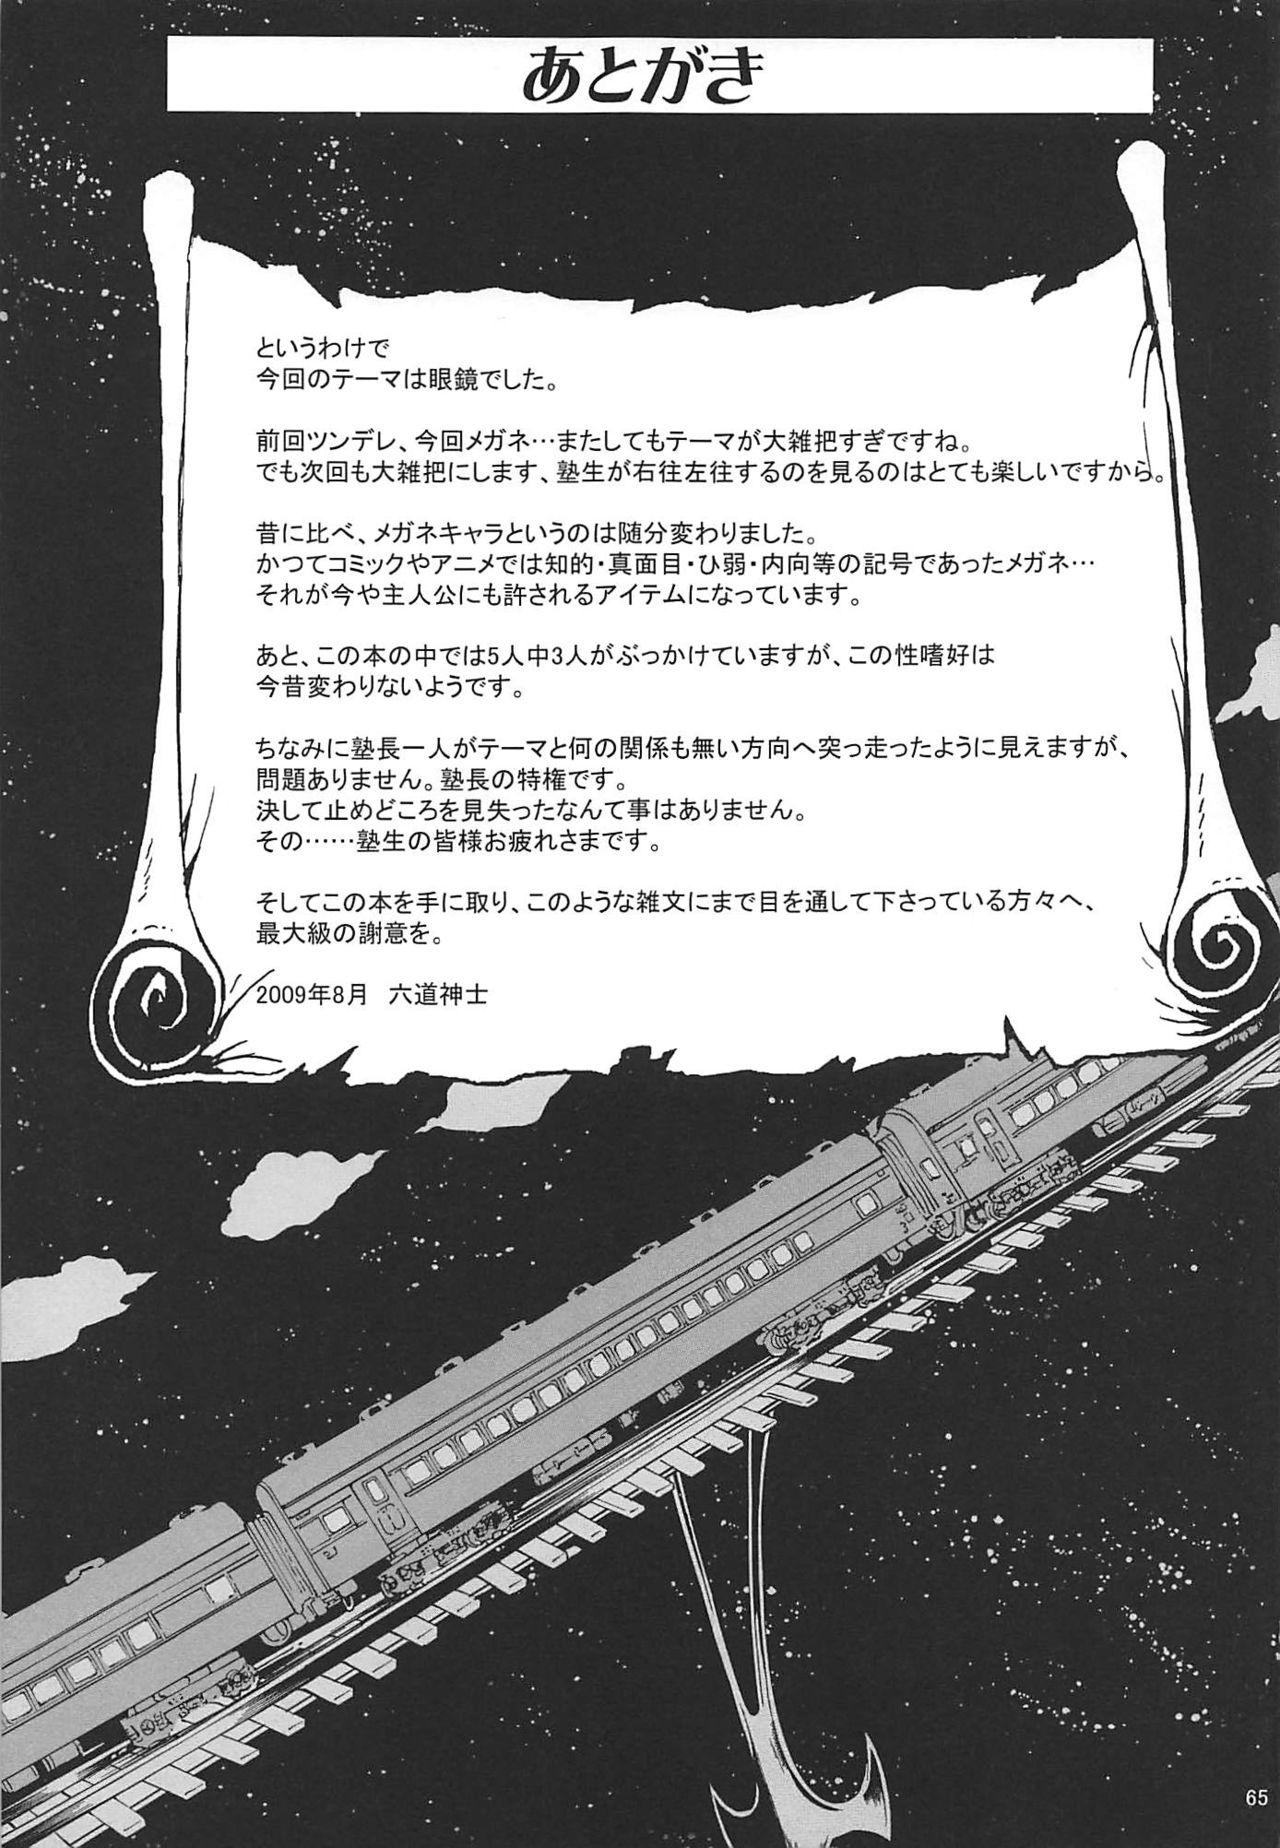 Namorada Juku Hou 02 - Neon genesis evangelion Galaxy express 999 Nurarihyon no mago Dirty - Page 64